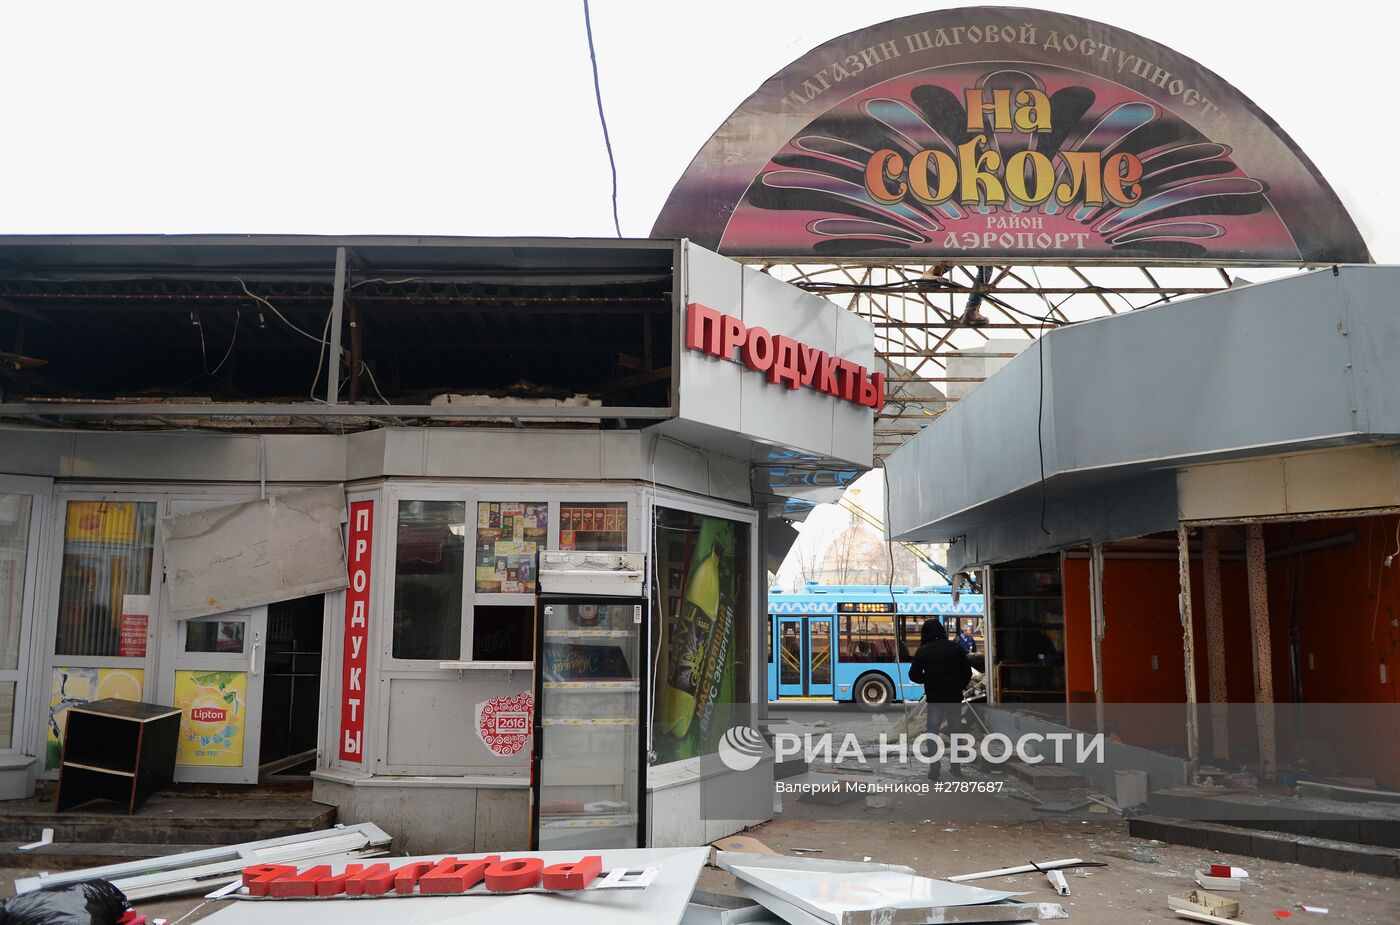 Снос незаконных построек в Москве